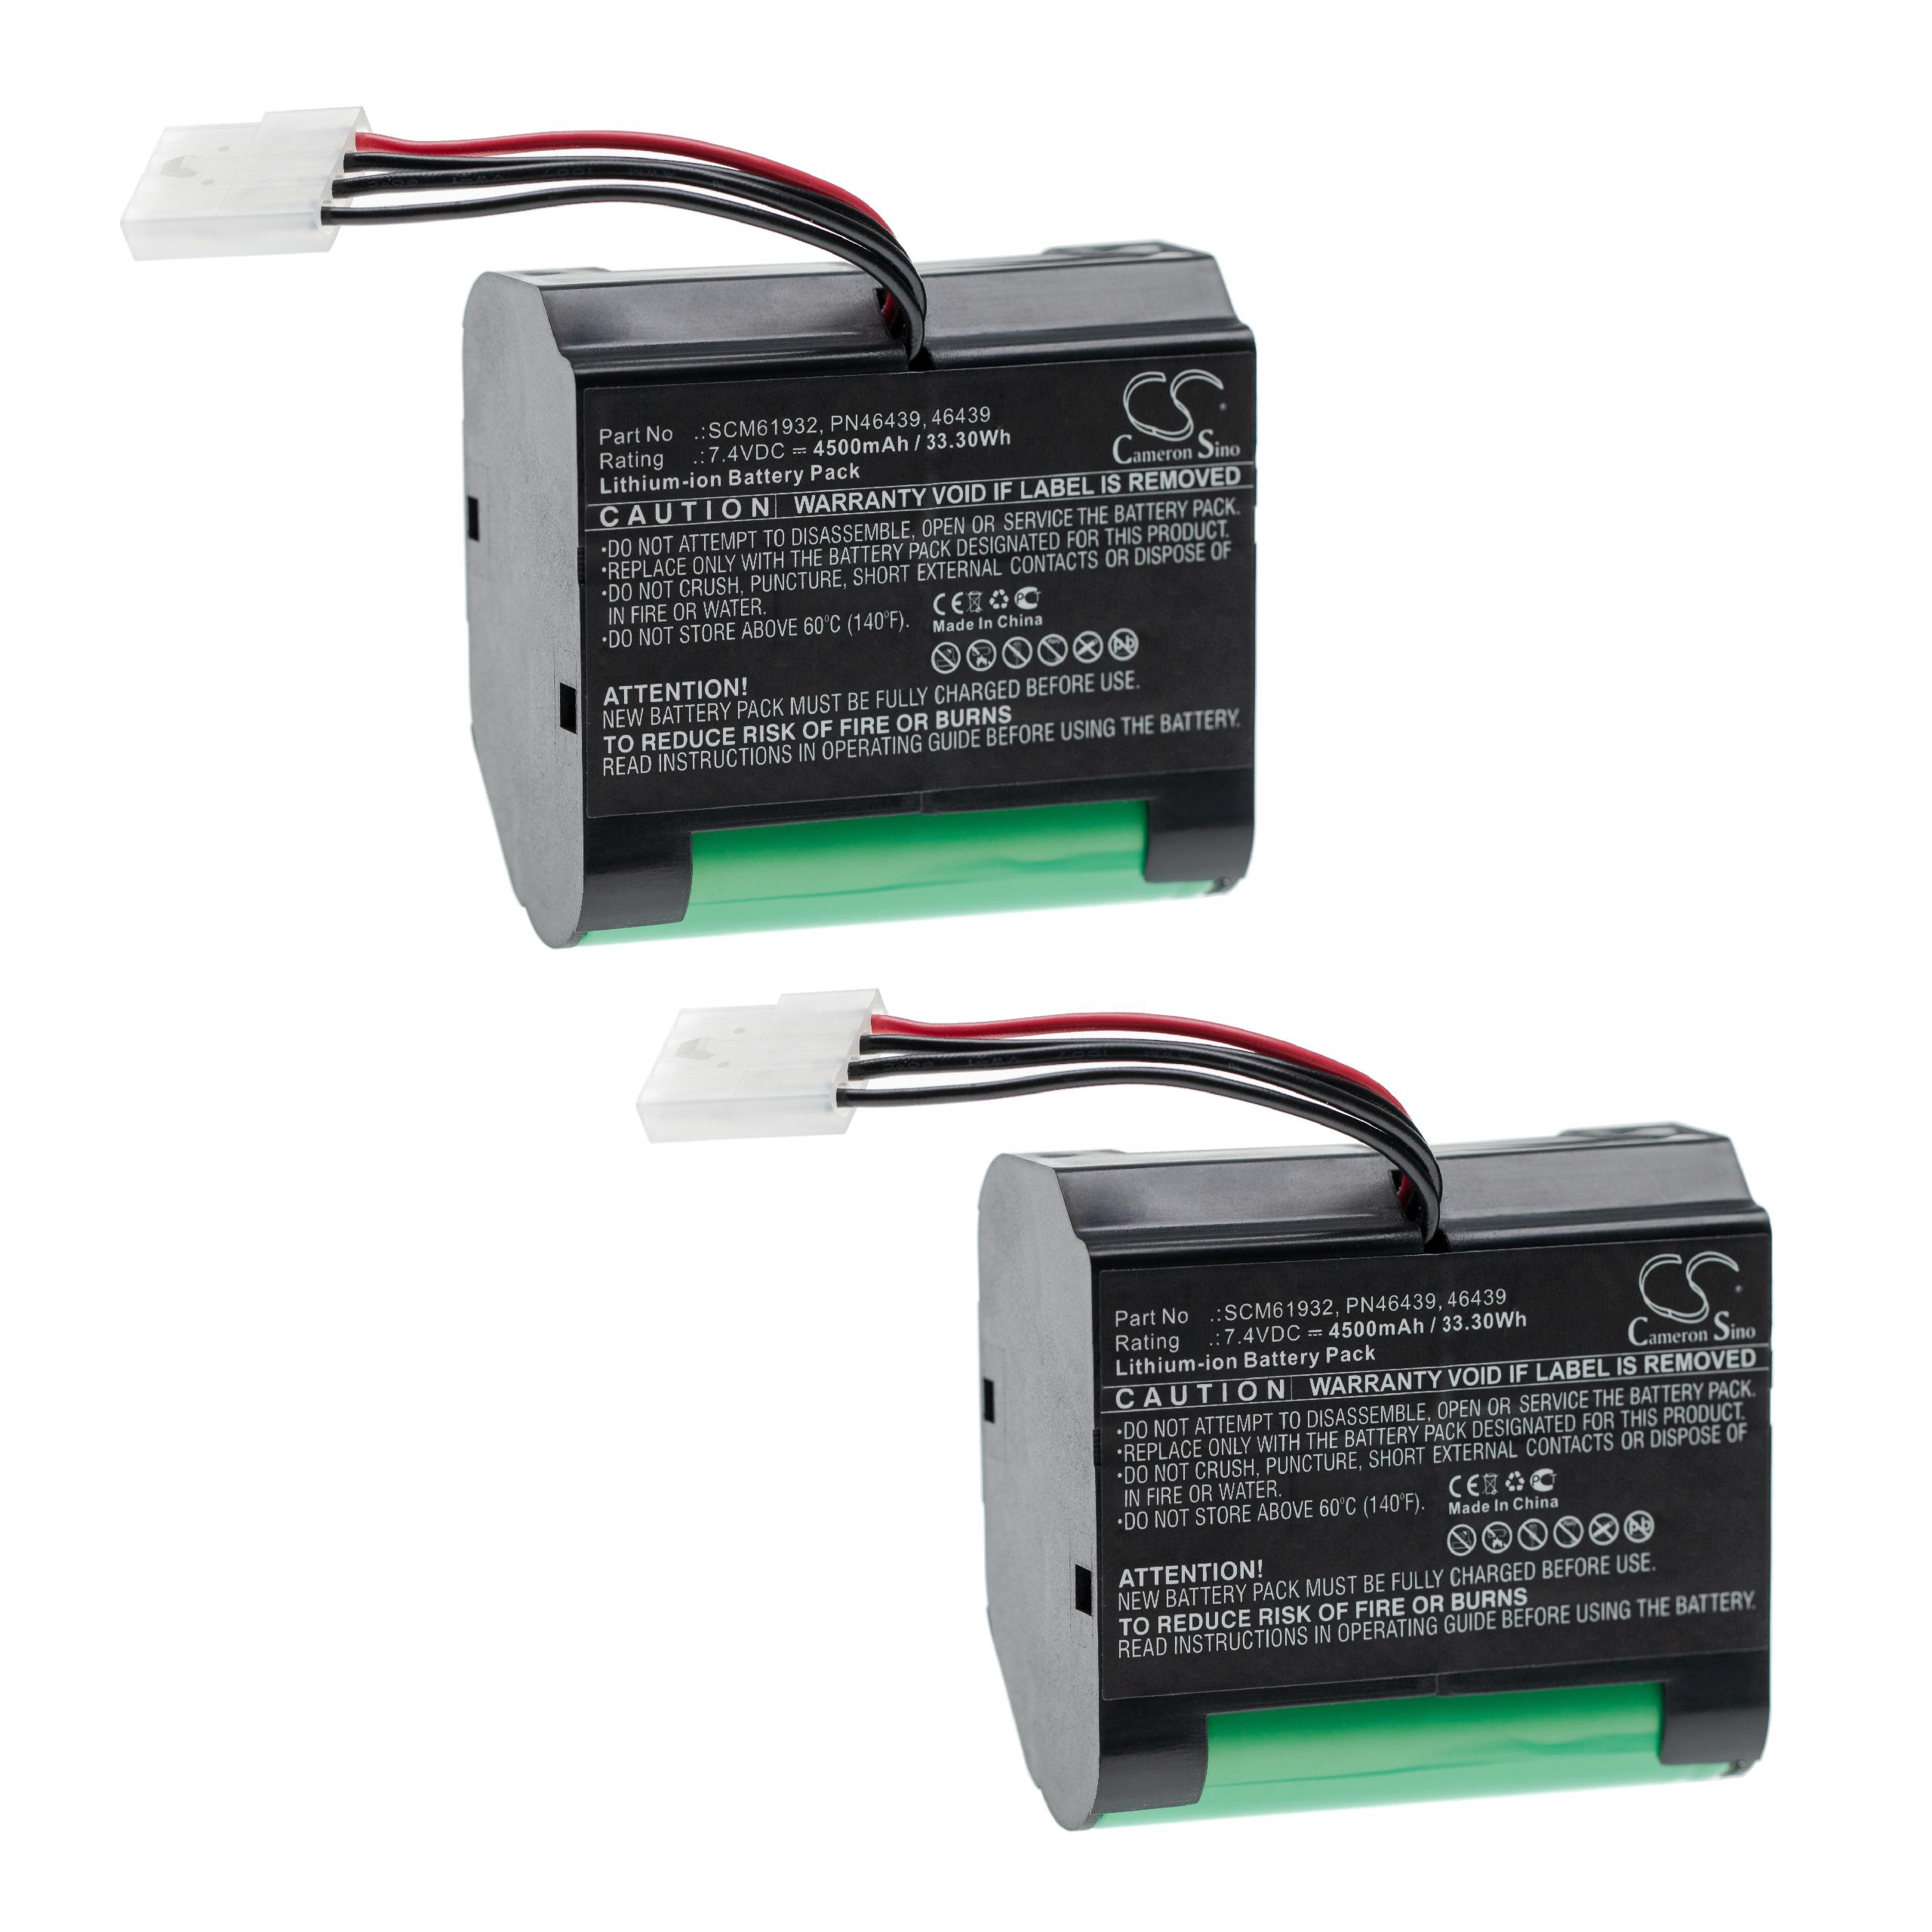 Batteries (2x pièces) remplace Vorwerk SCM61932, PN46439, 46439 pour robot aspirateur - 4500mAh 7,4V Li-ion